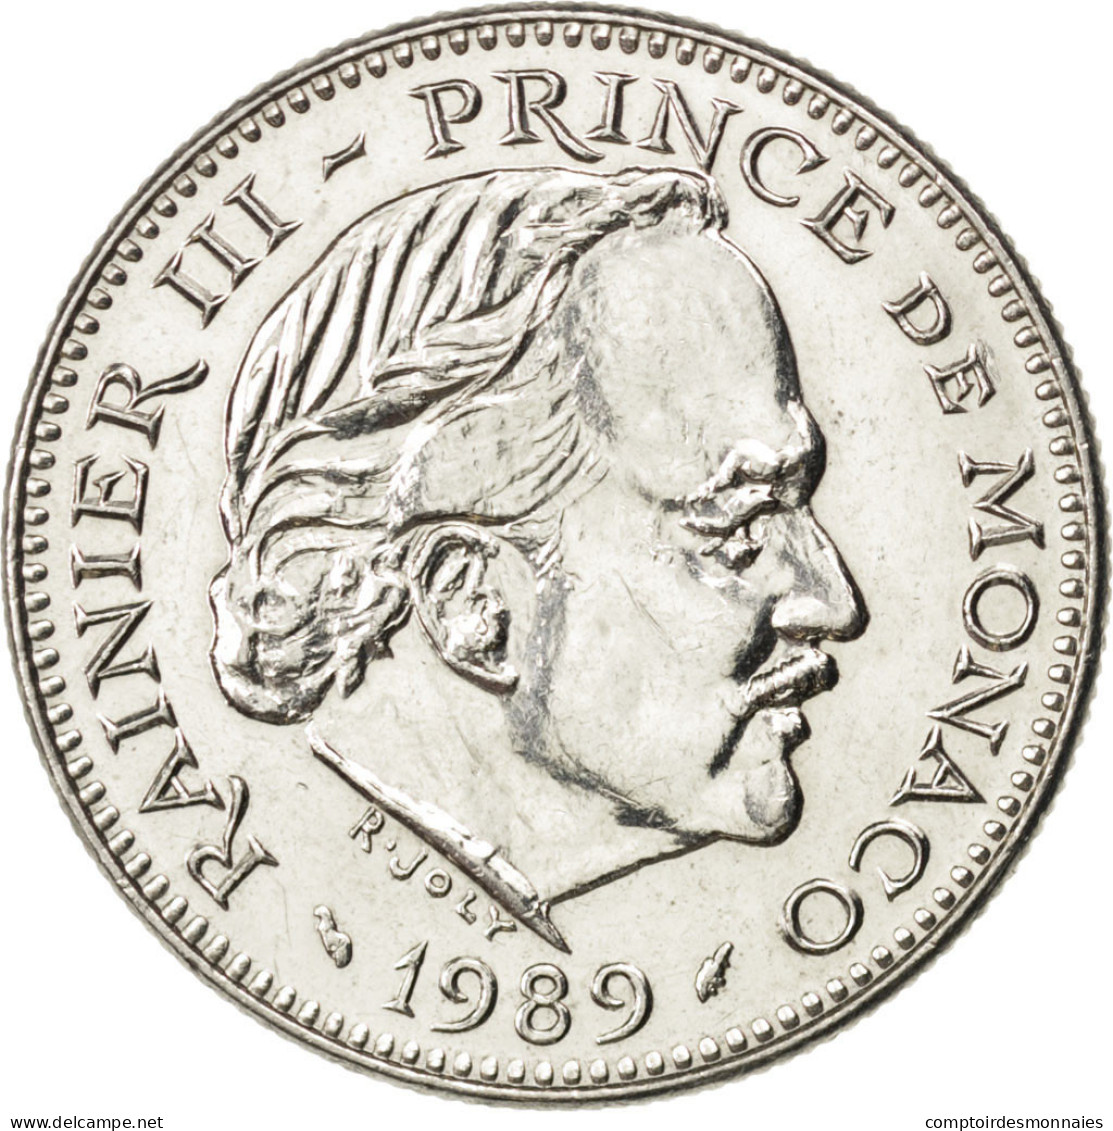 Monnaie, Monaco, Rainier III, 5 Francs, 1989, SPL, Copper-nickel, KM:150 - 1960-2001 Nouveaux Francs